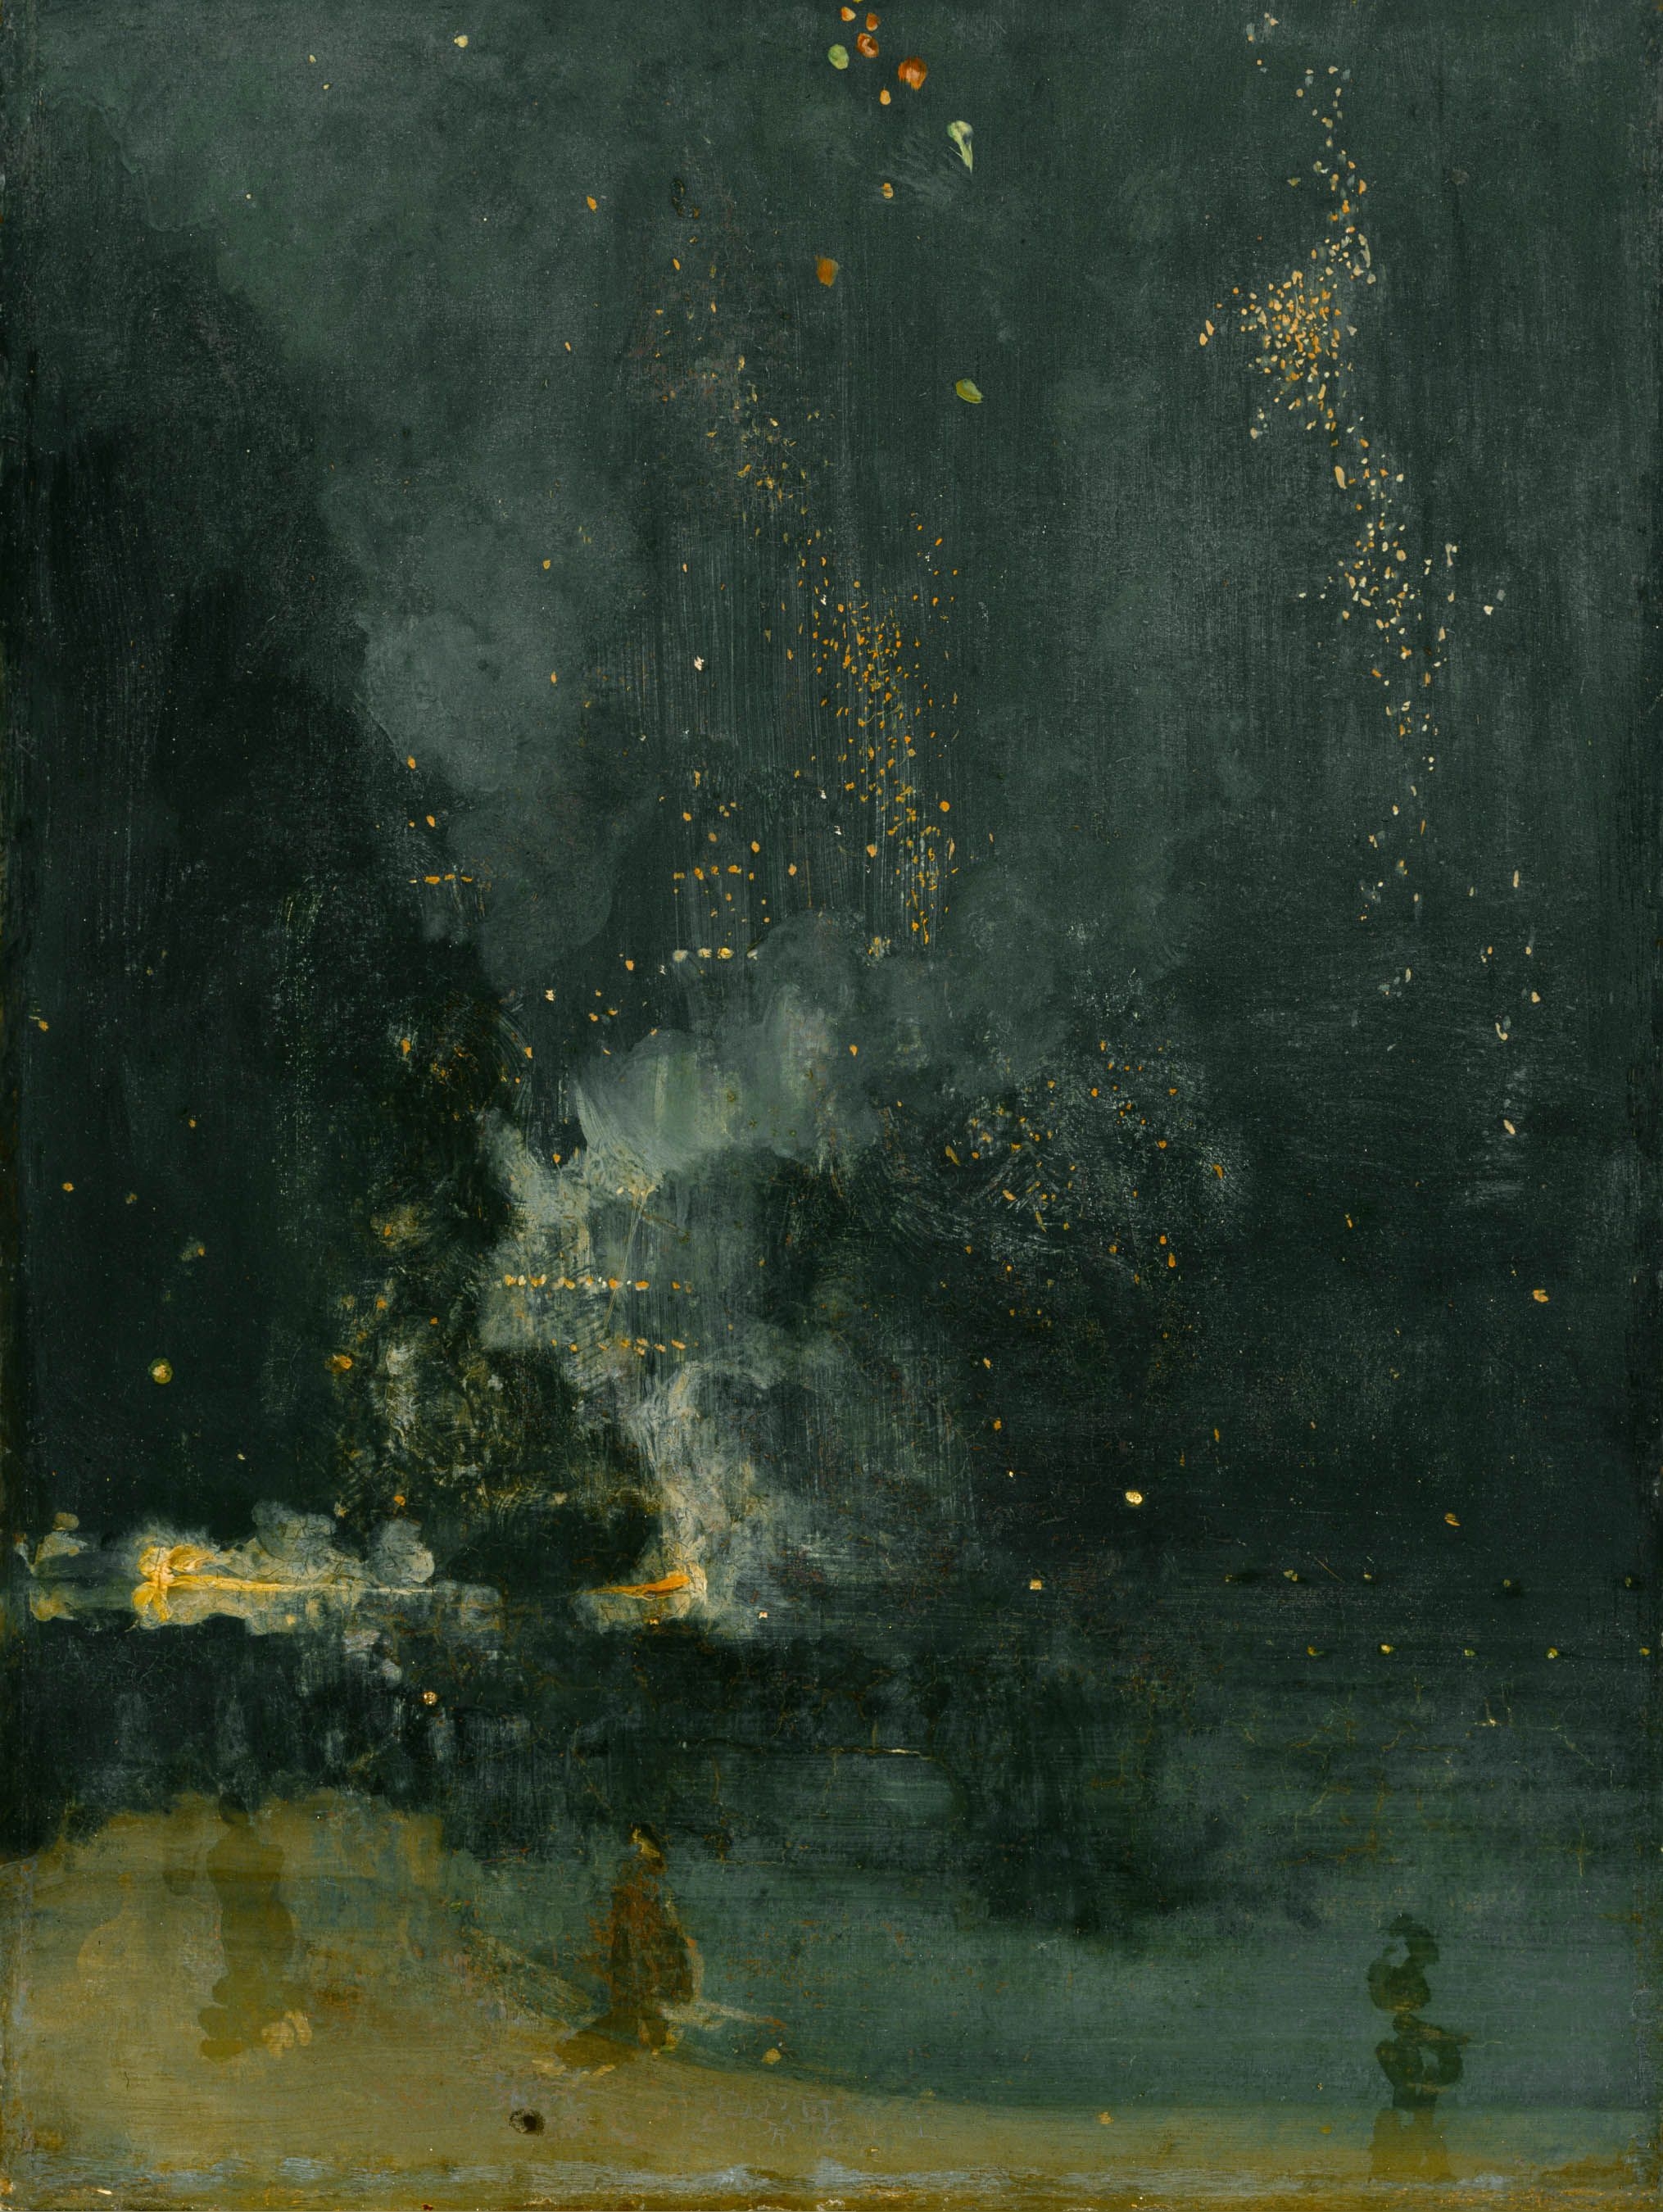 Nocturne in Schwarz und Gold: Die fallende Rakete by James Abbott McNeill Whistler - 1875 - 60,3 × 46,7 cm Detroit Institute of Arts